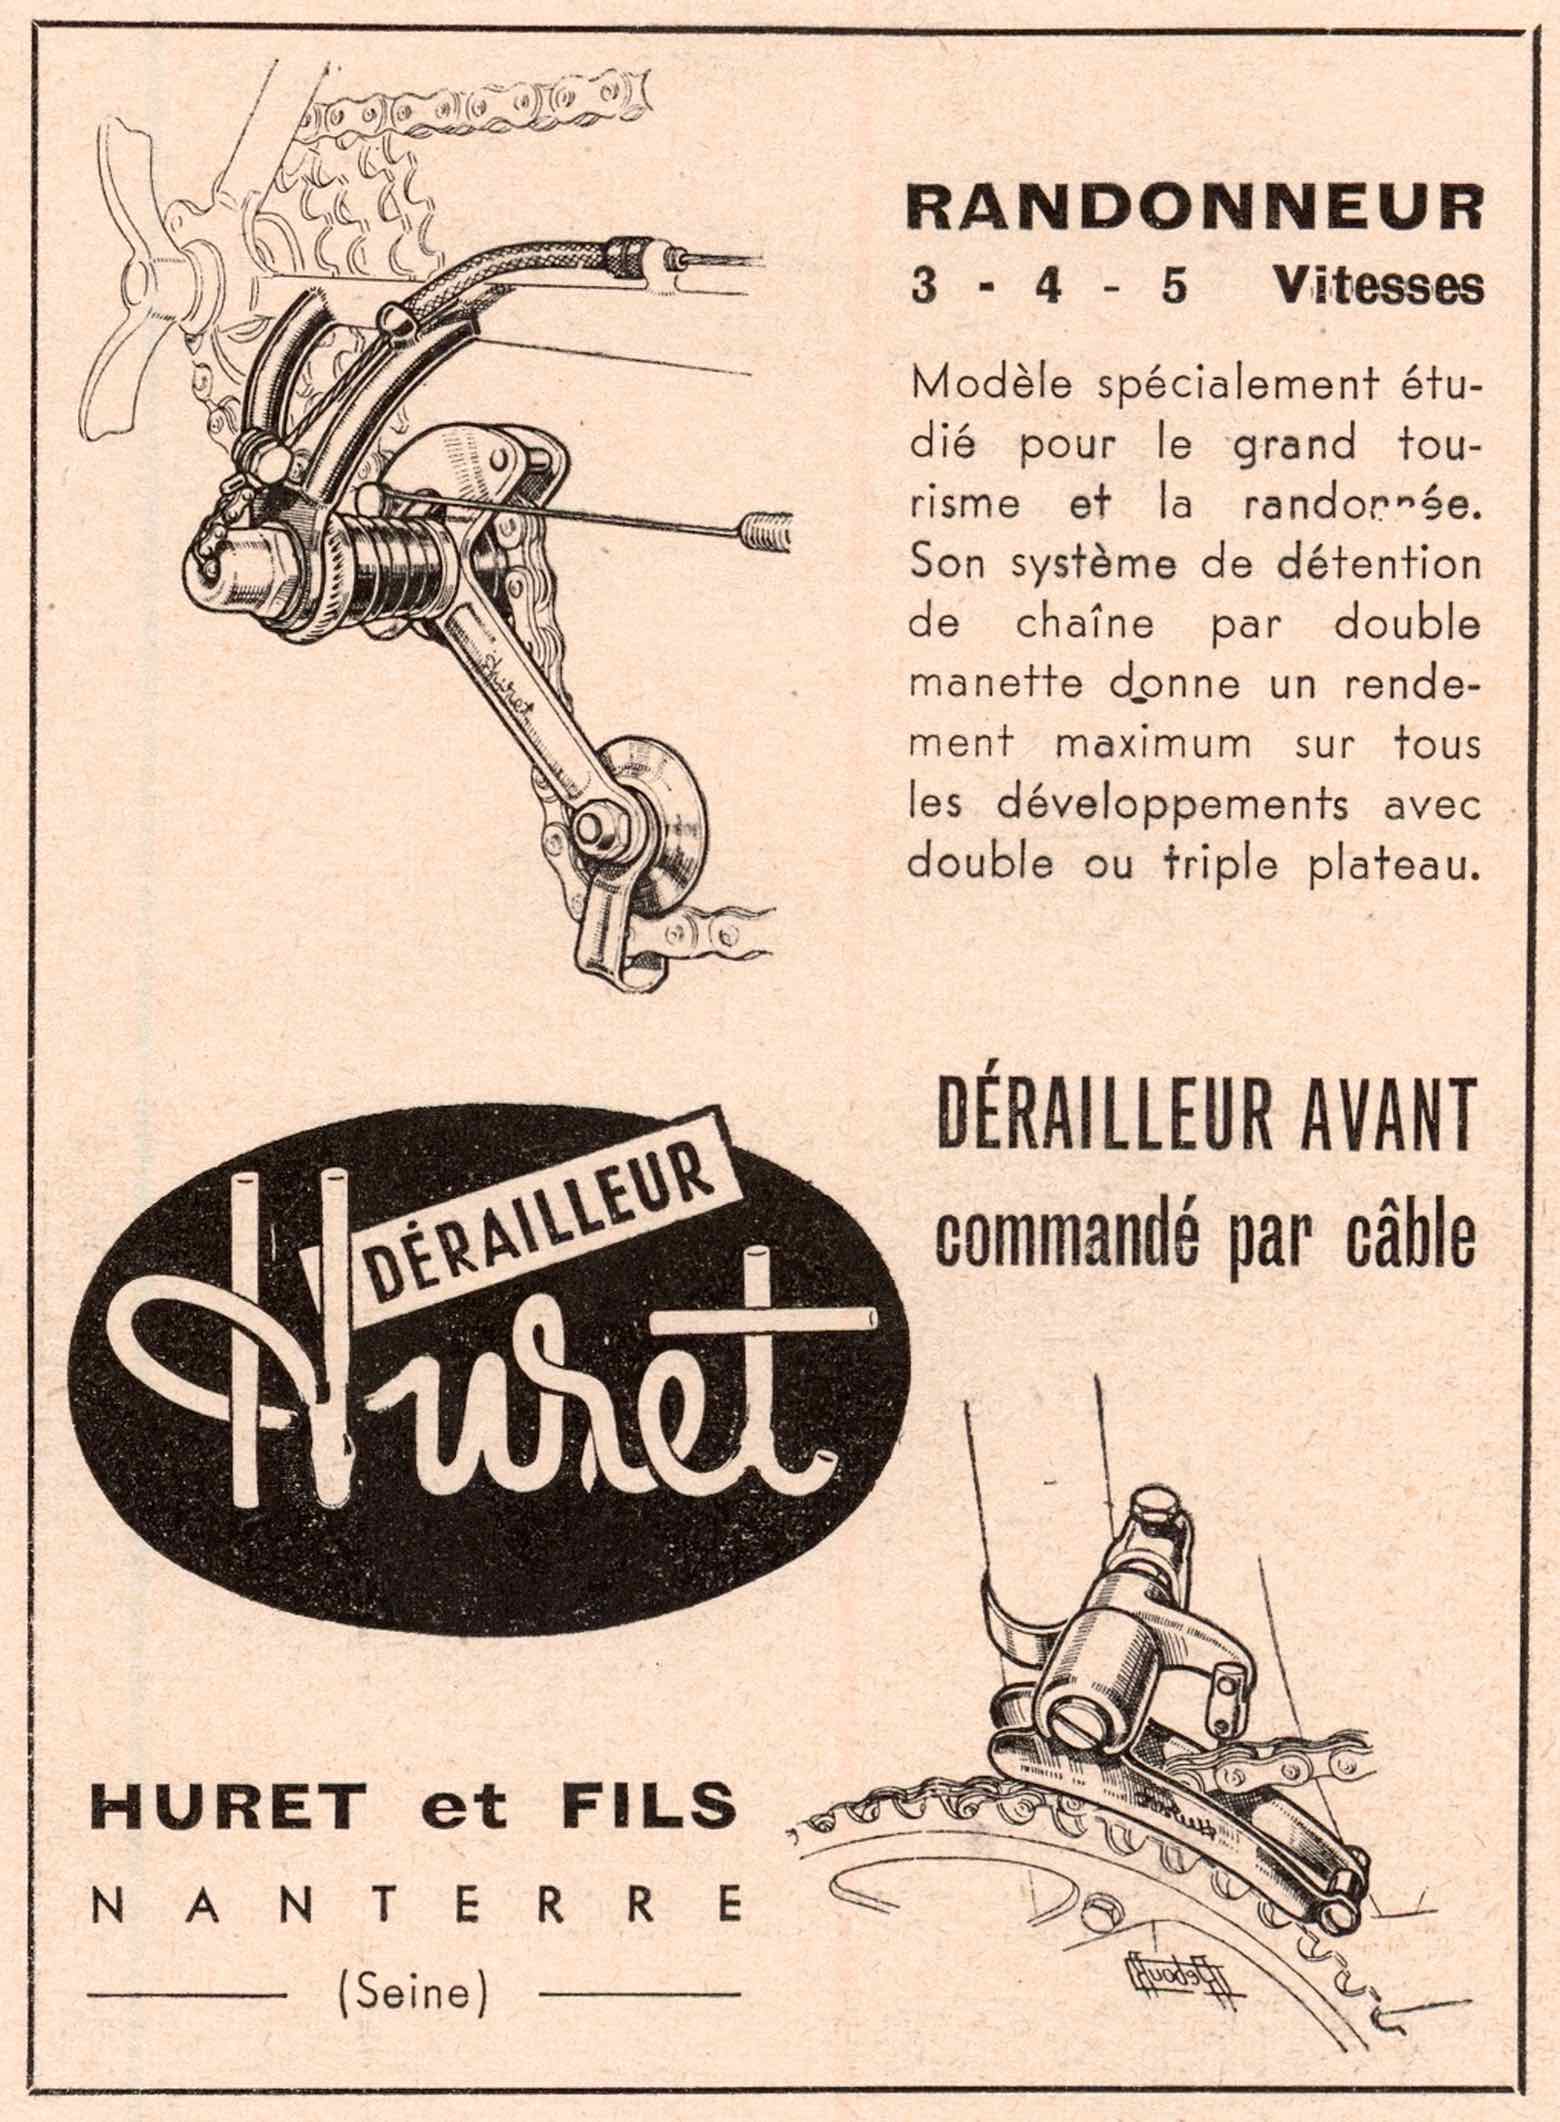 Le Cycliste 1952 - Huret advert main image